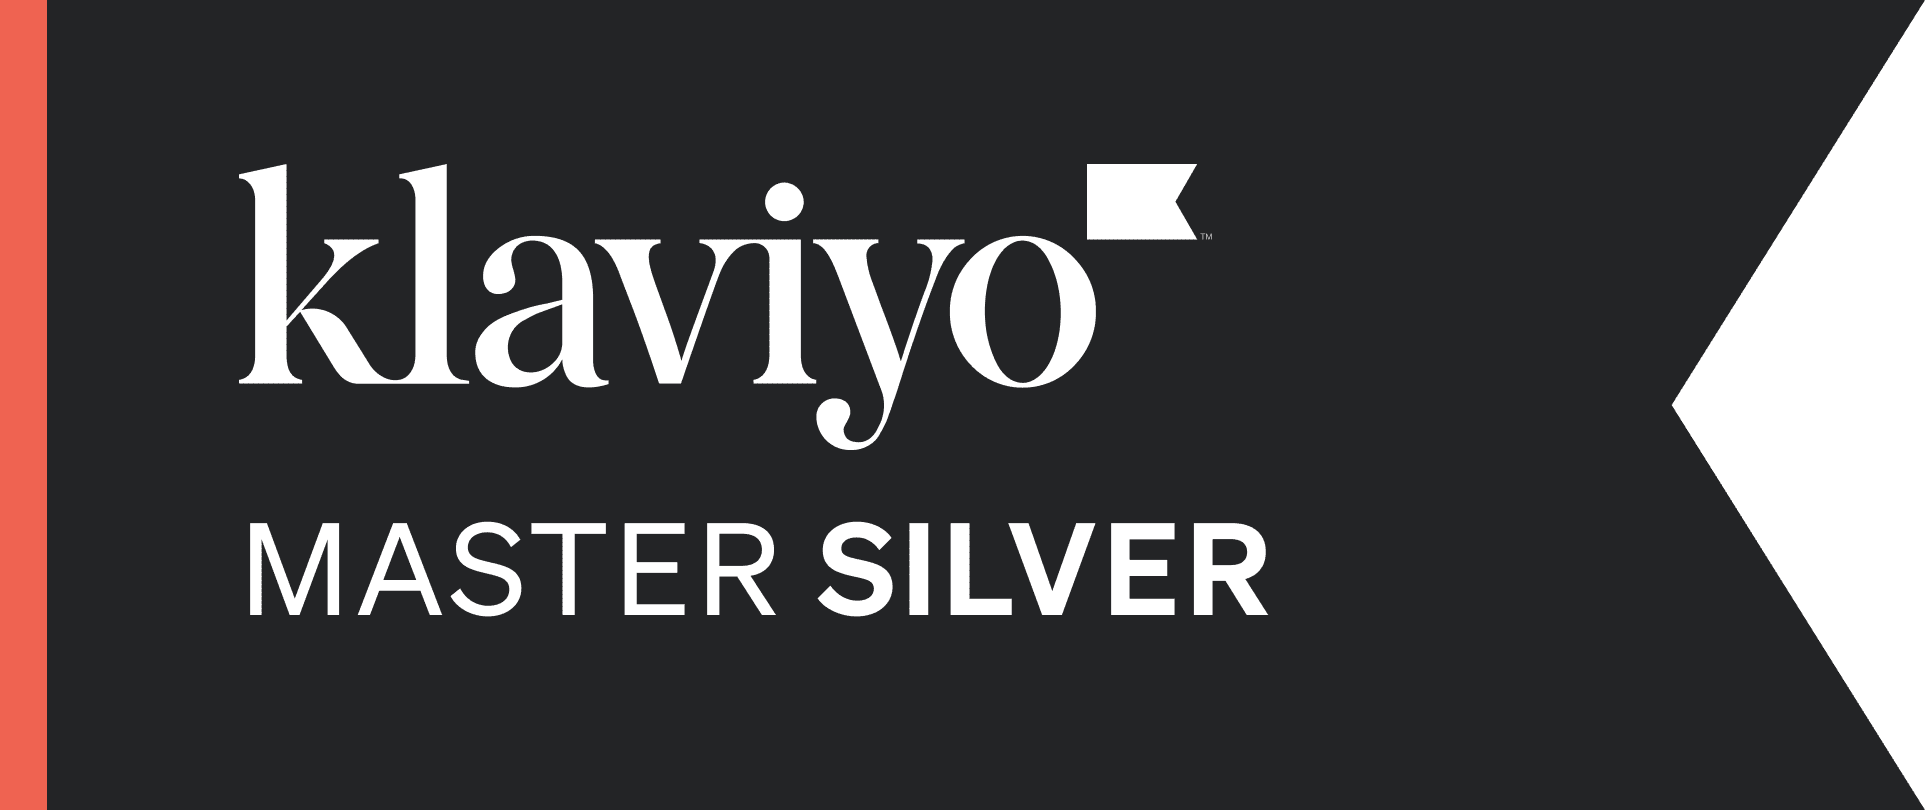 klaviyo master silver